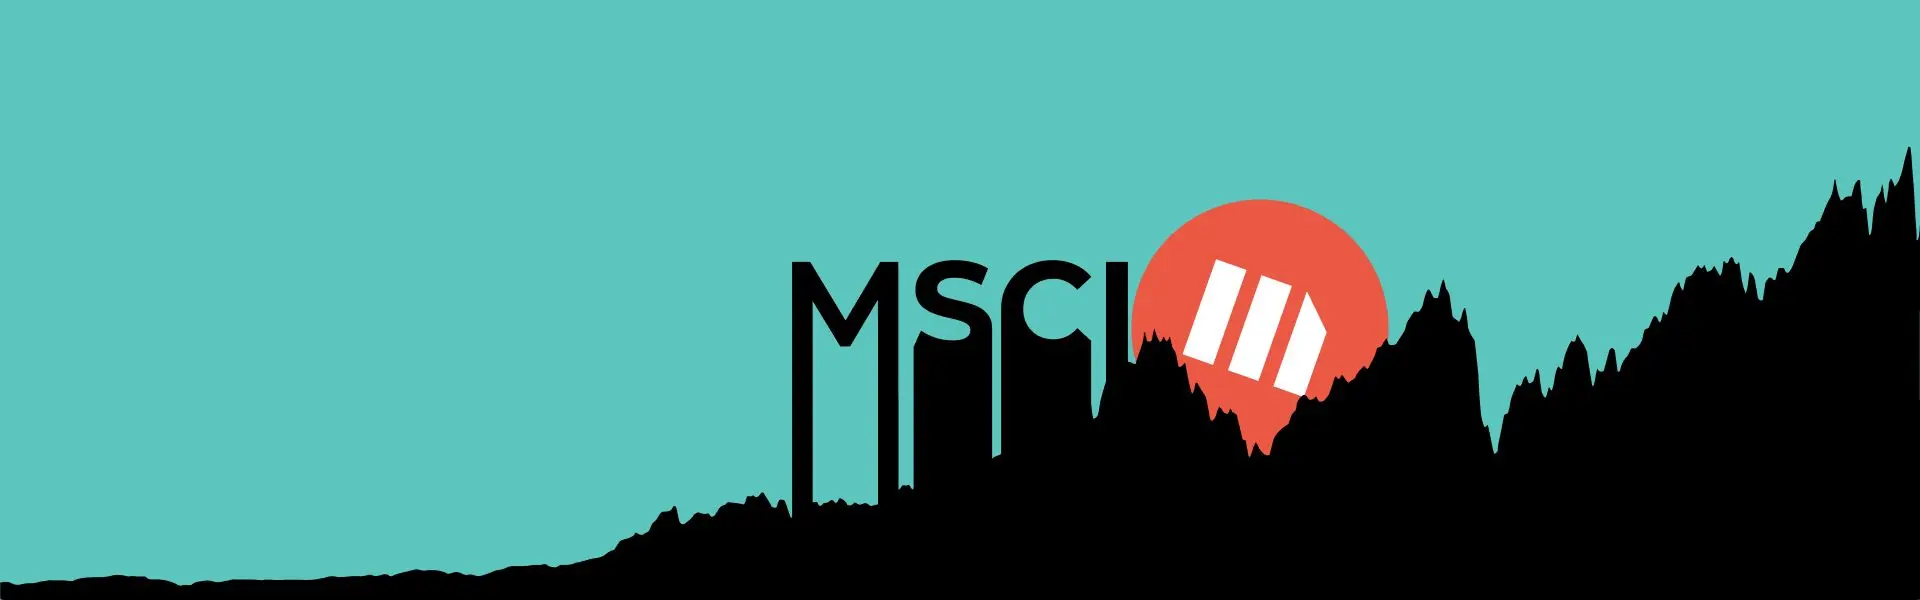 Компанія MicroStrategy була включена в індекс MSCI.